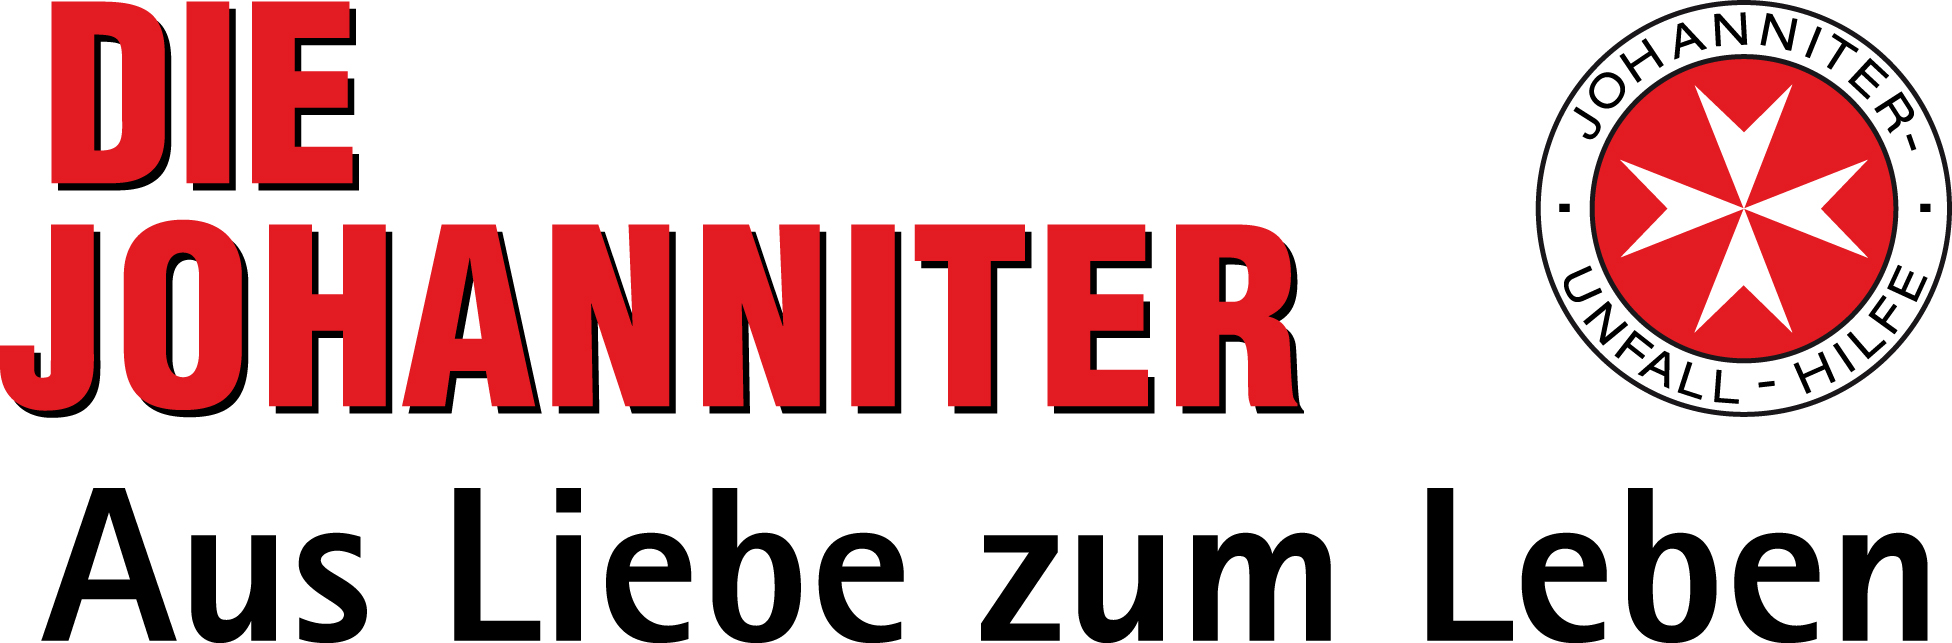 Logo Johanniter Unfall Hilfe Claim rgb 300dpi